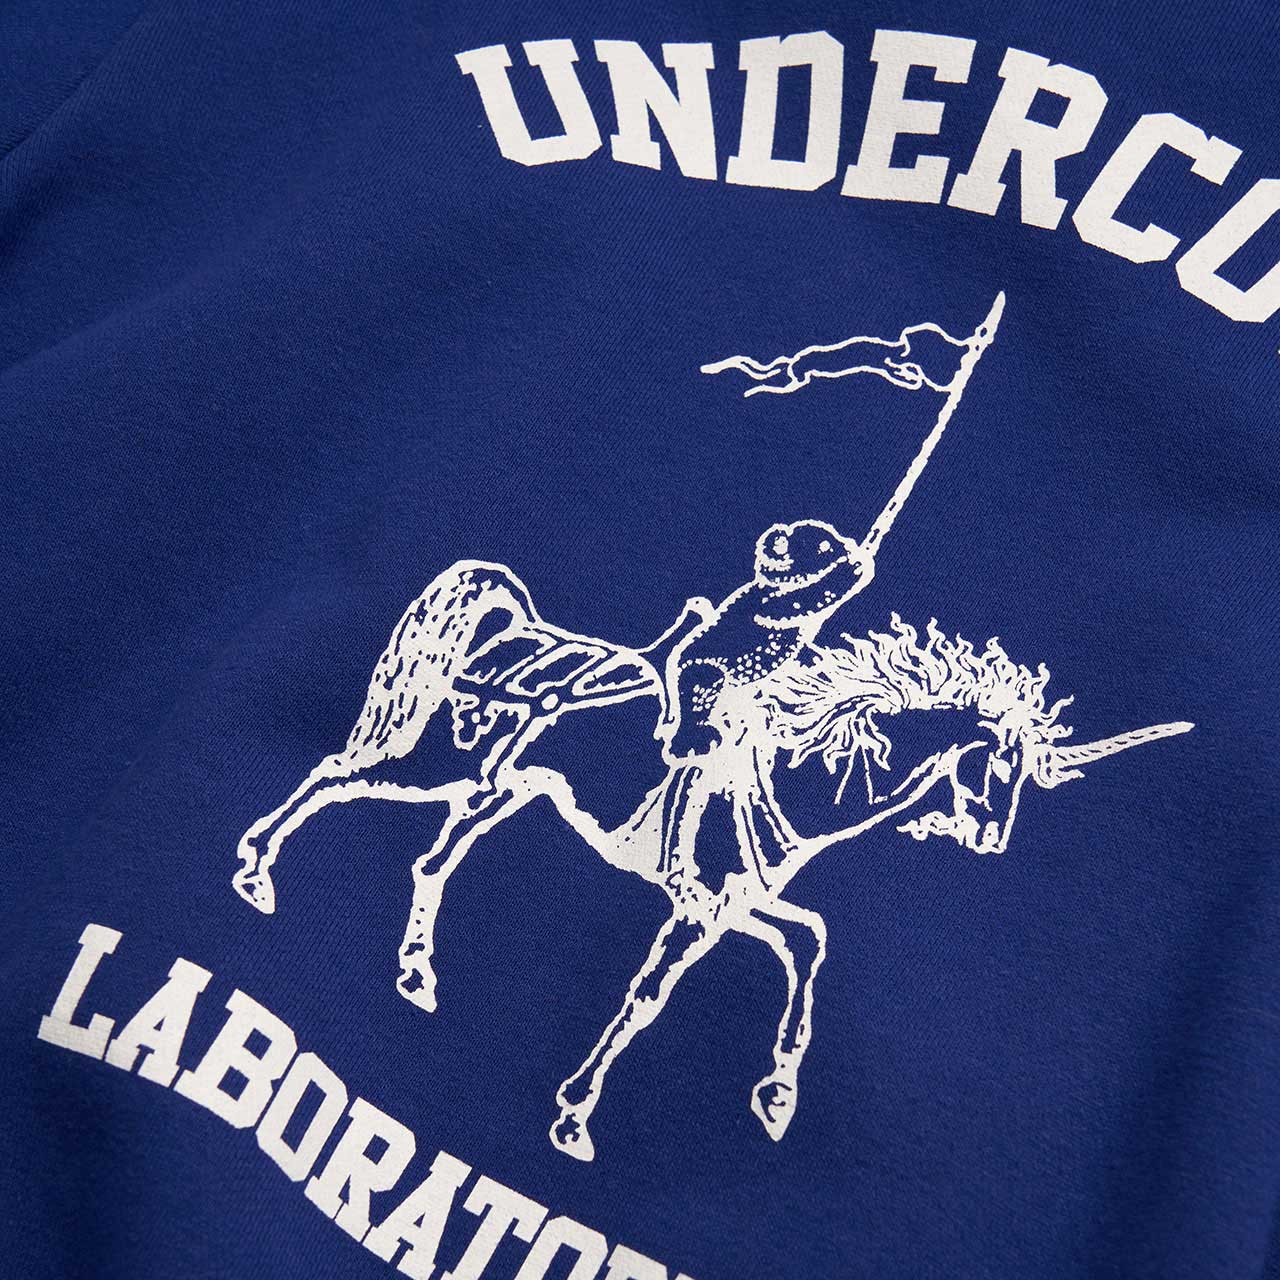 undercover undercover sweatshirt (blue)